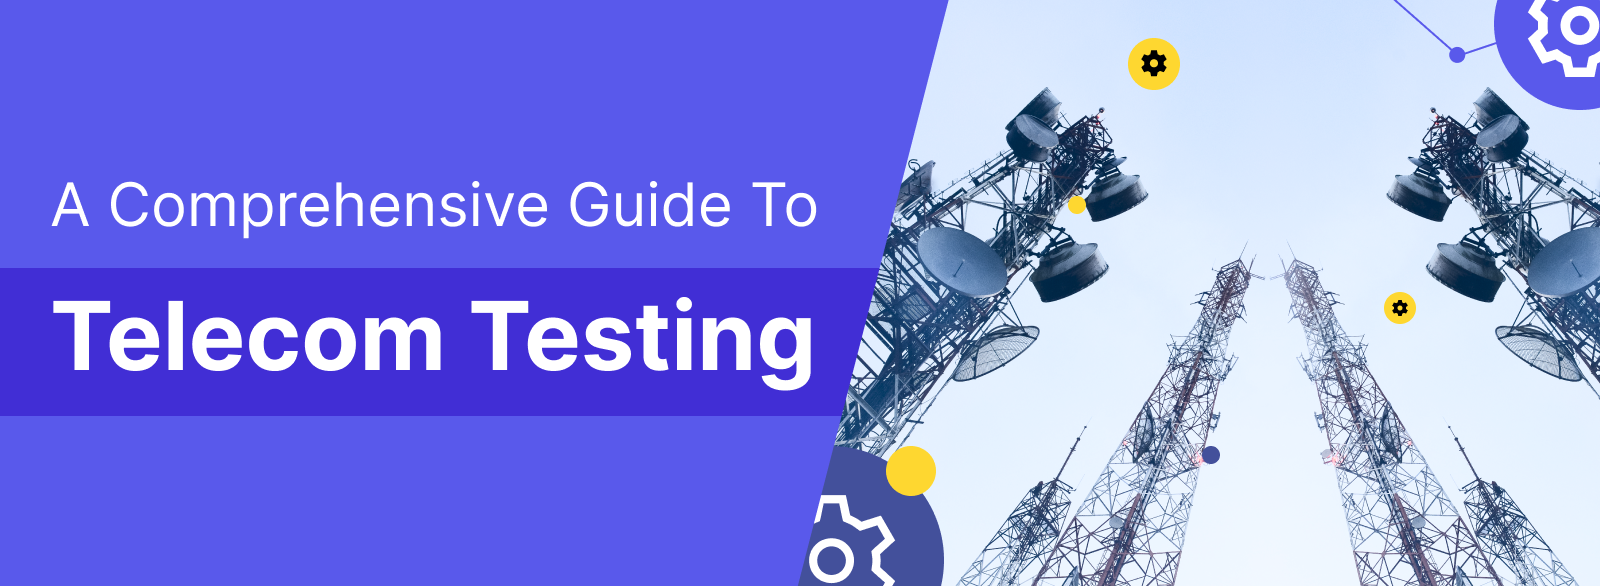 A Comprehensive Guide to Telecom Testing